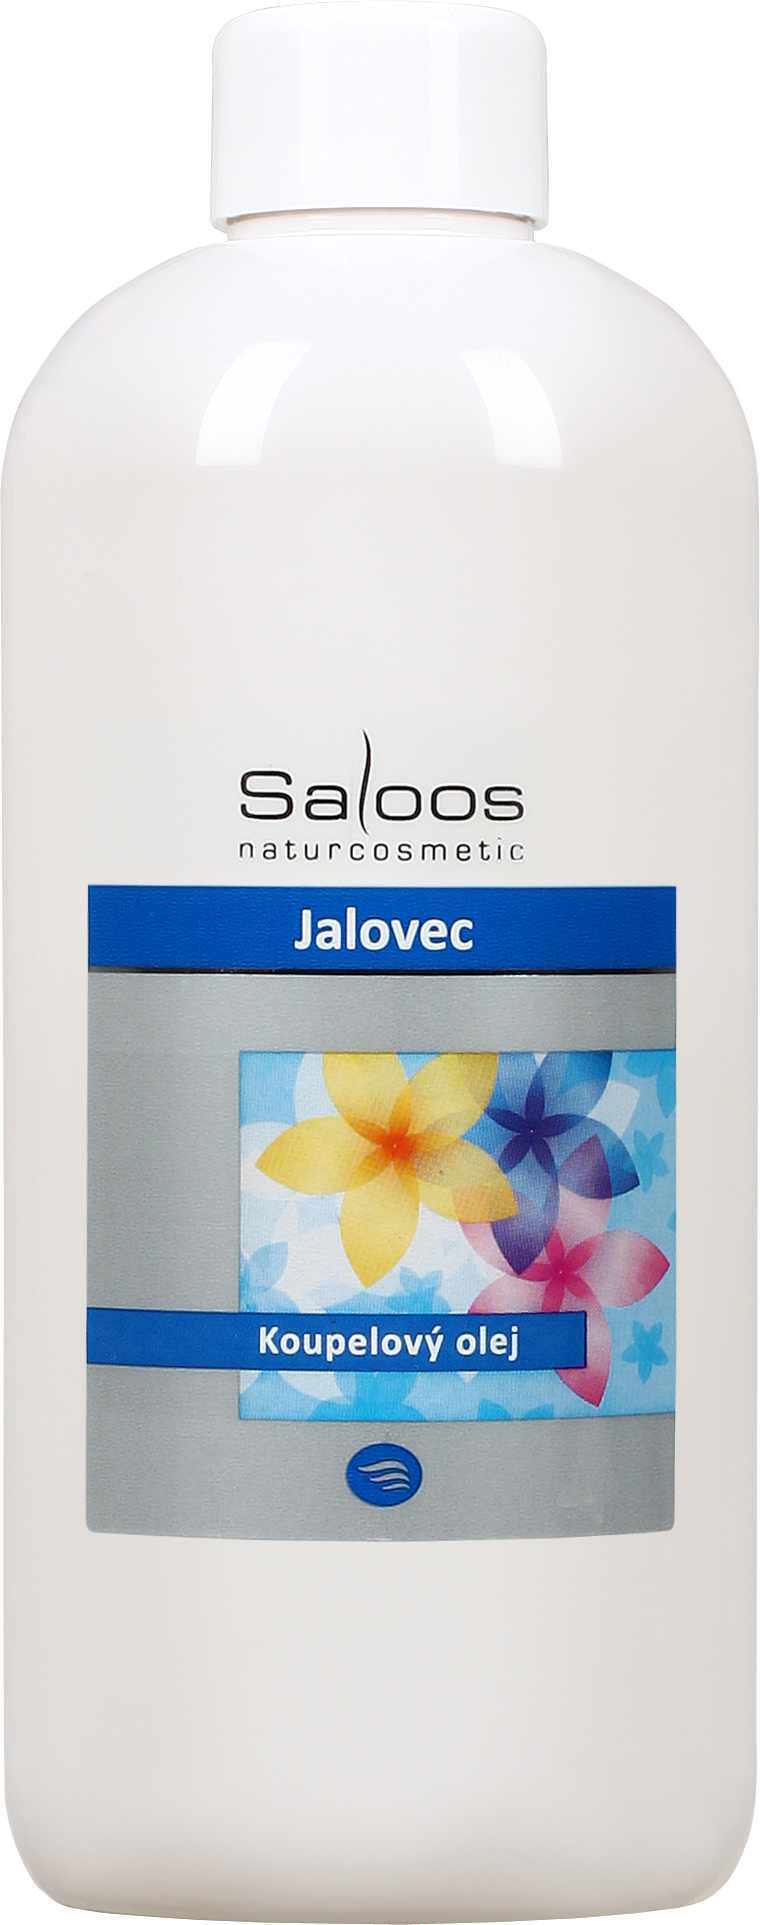 Saloos Jalovec - koupelový olej Balení: 500 ml